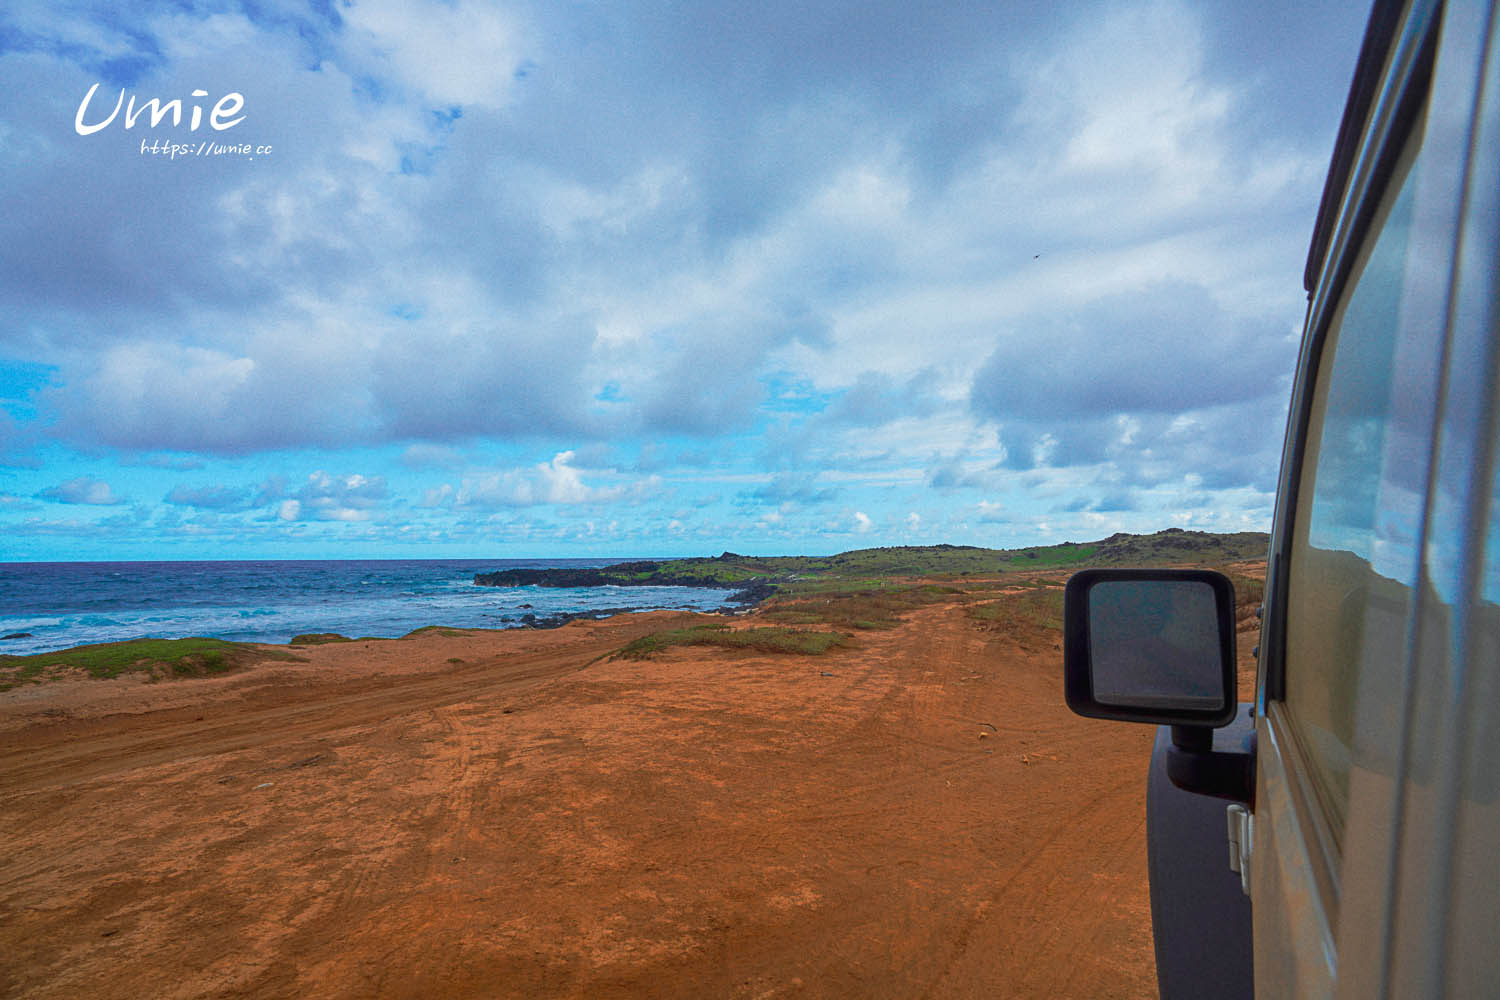 夏威夷自駕旅行|租了敞篷跑車、吉普車!旅行中屬於我們的帥氣迷人景色! (可愛島|大島|茂宜|歐胡島跳島自駕行程分享!)